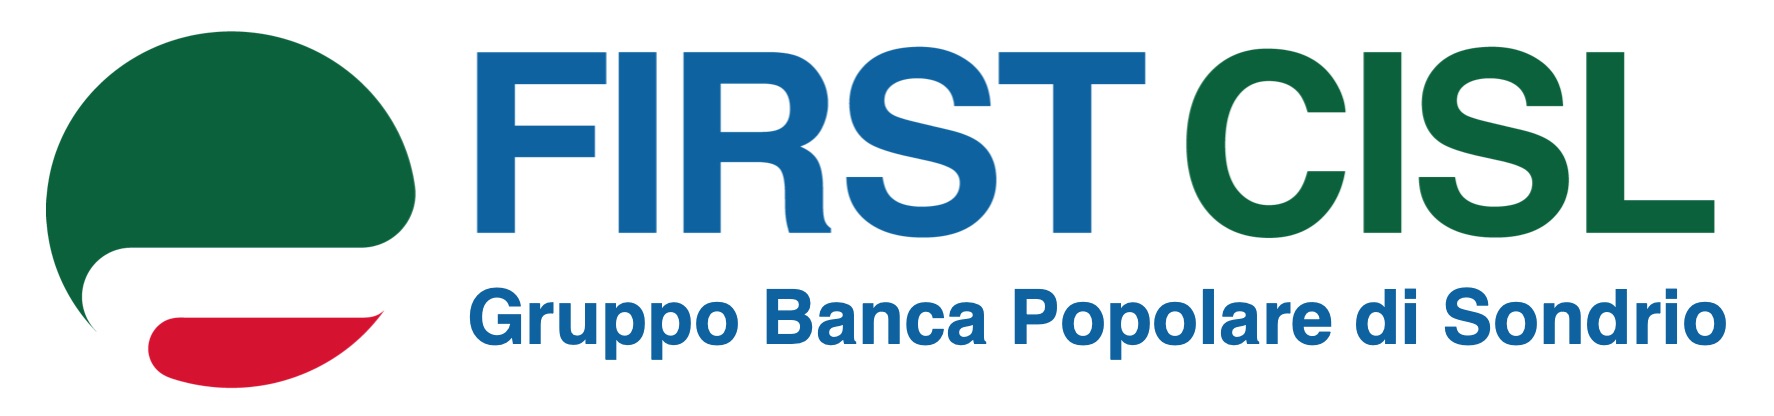 FIRST Gruppo Banca Popolare di Sondrio